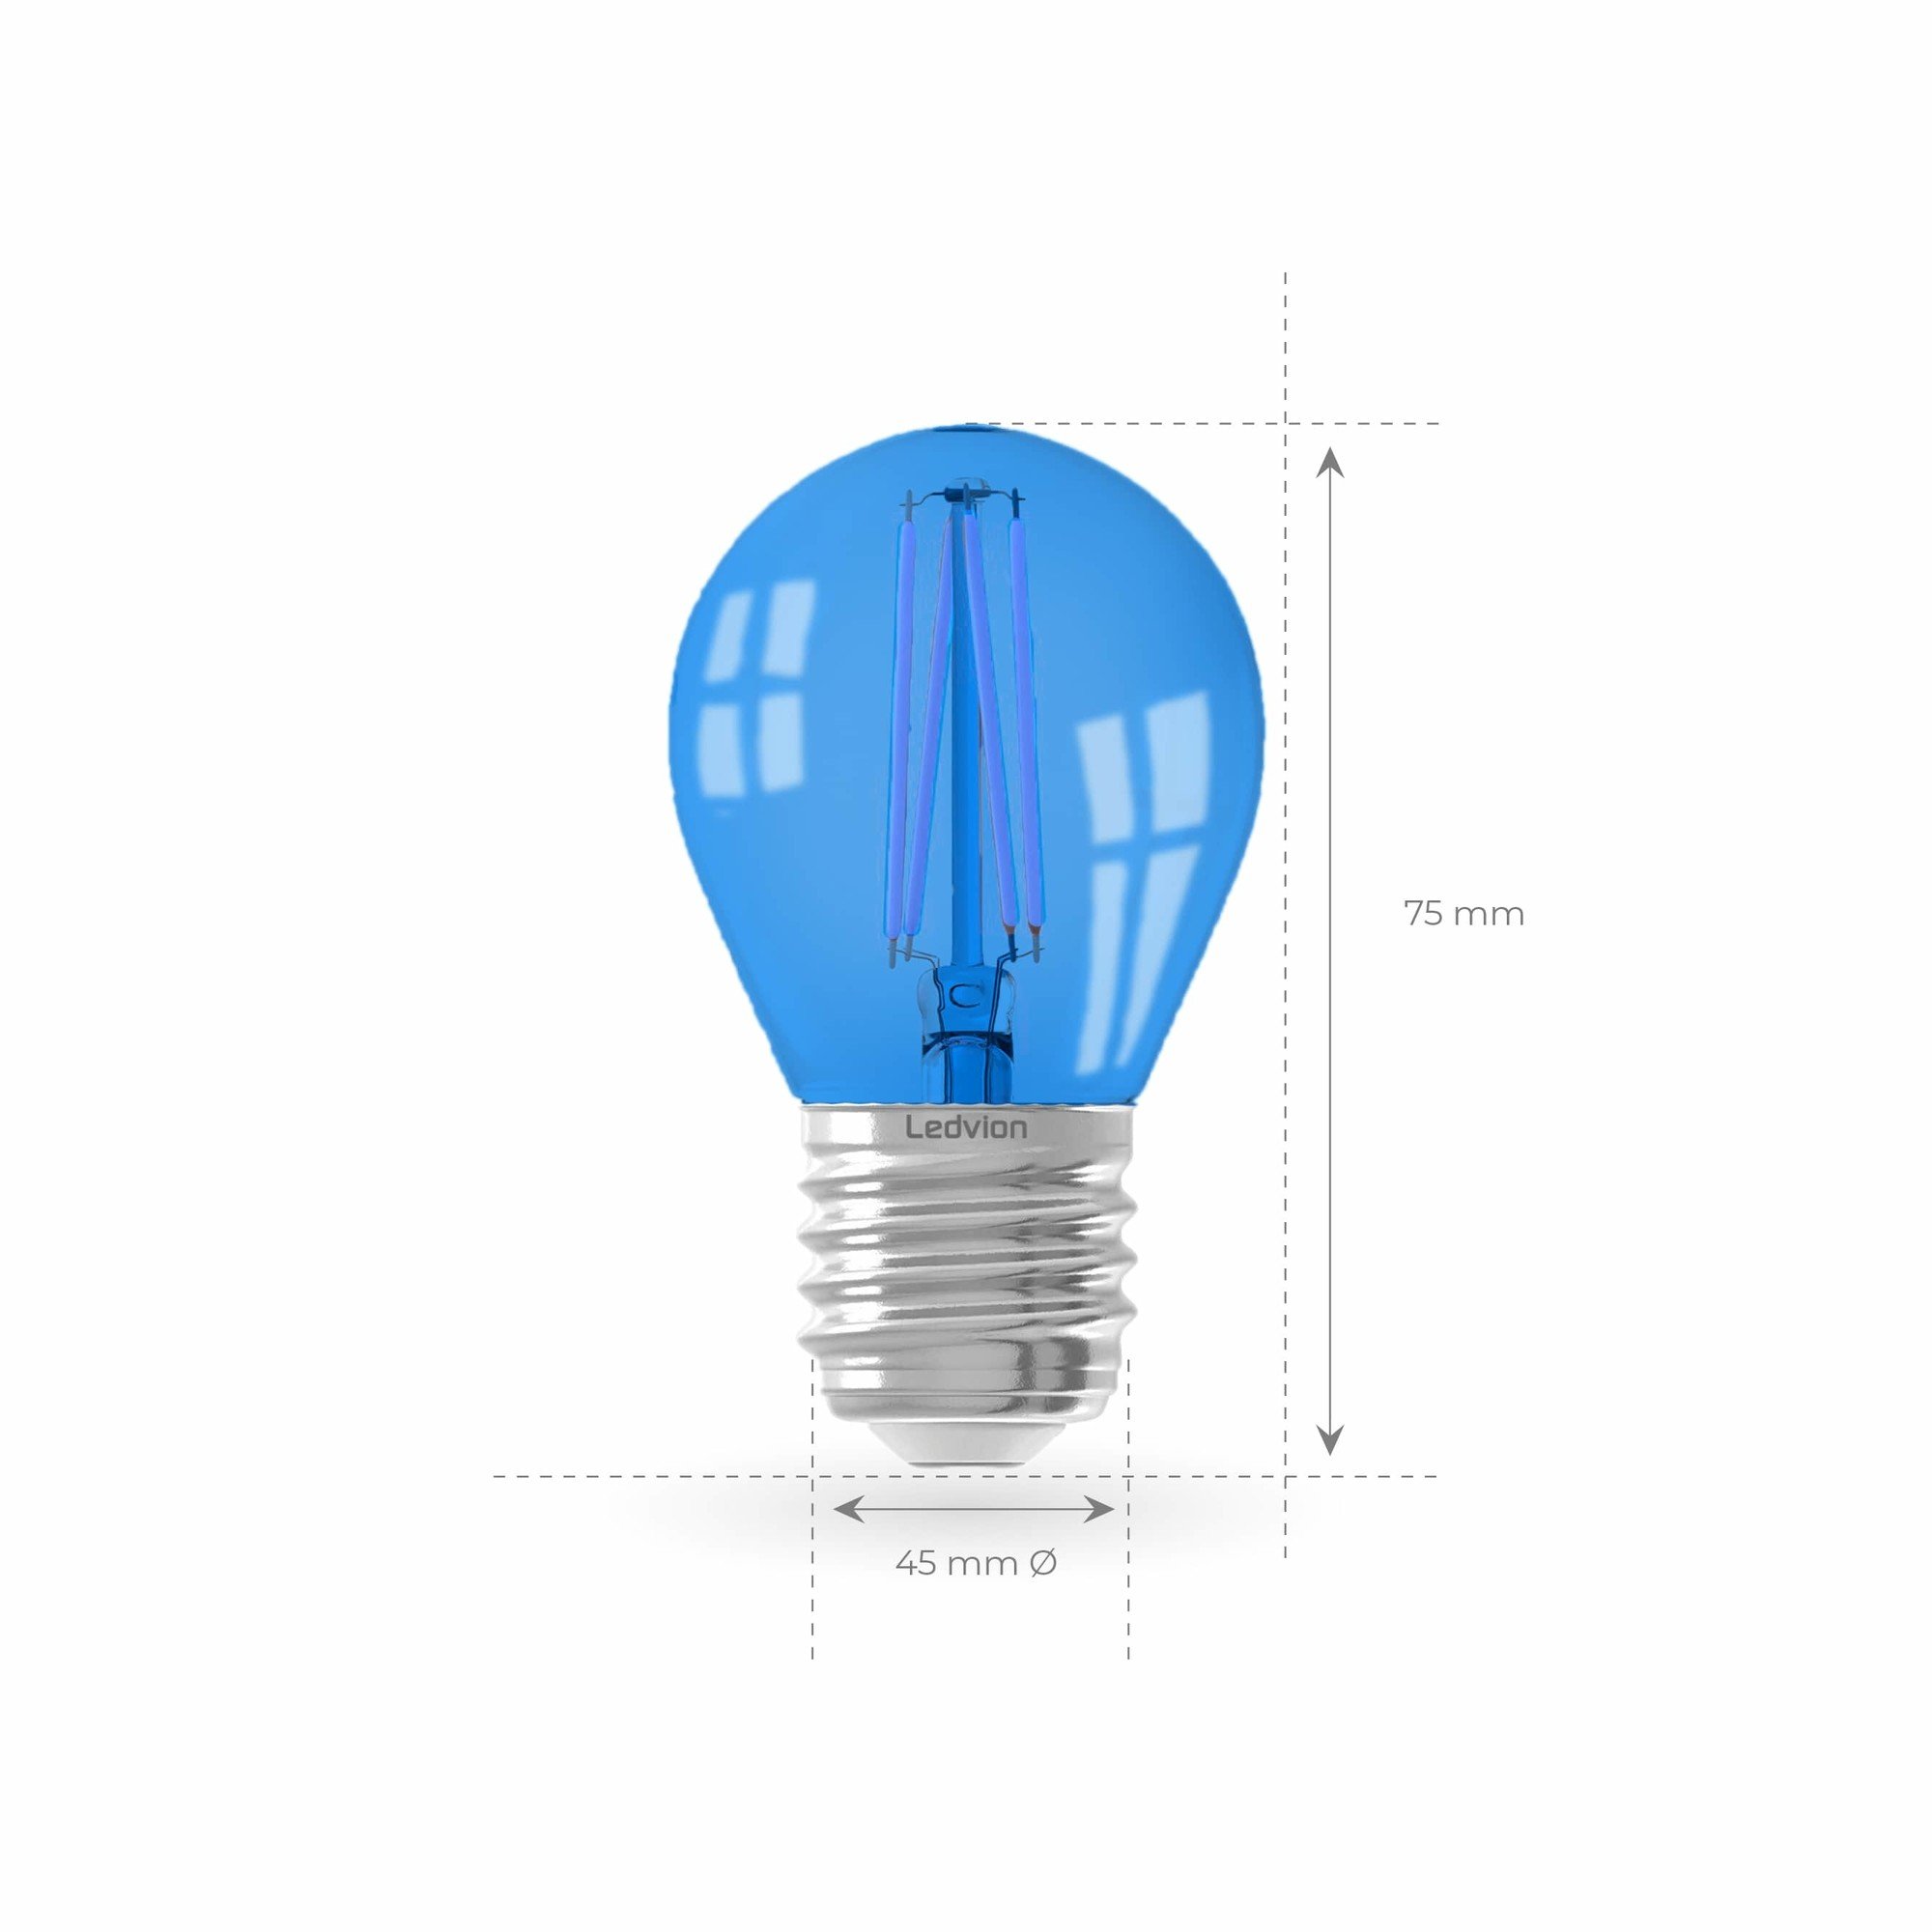 Ledvion E27 Lamp Filament 1W 2100K - 50 Lumen - Lightexpert.nl